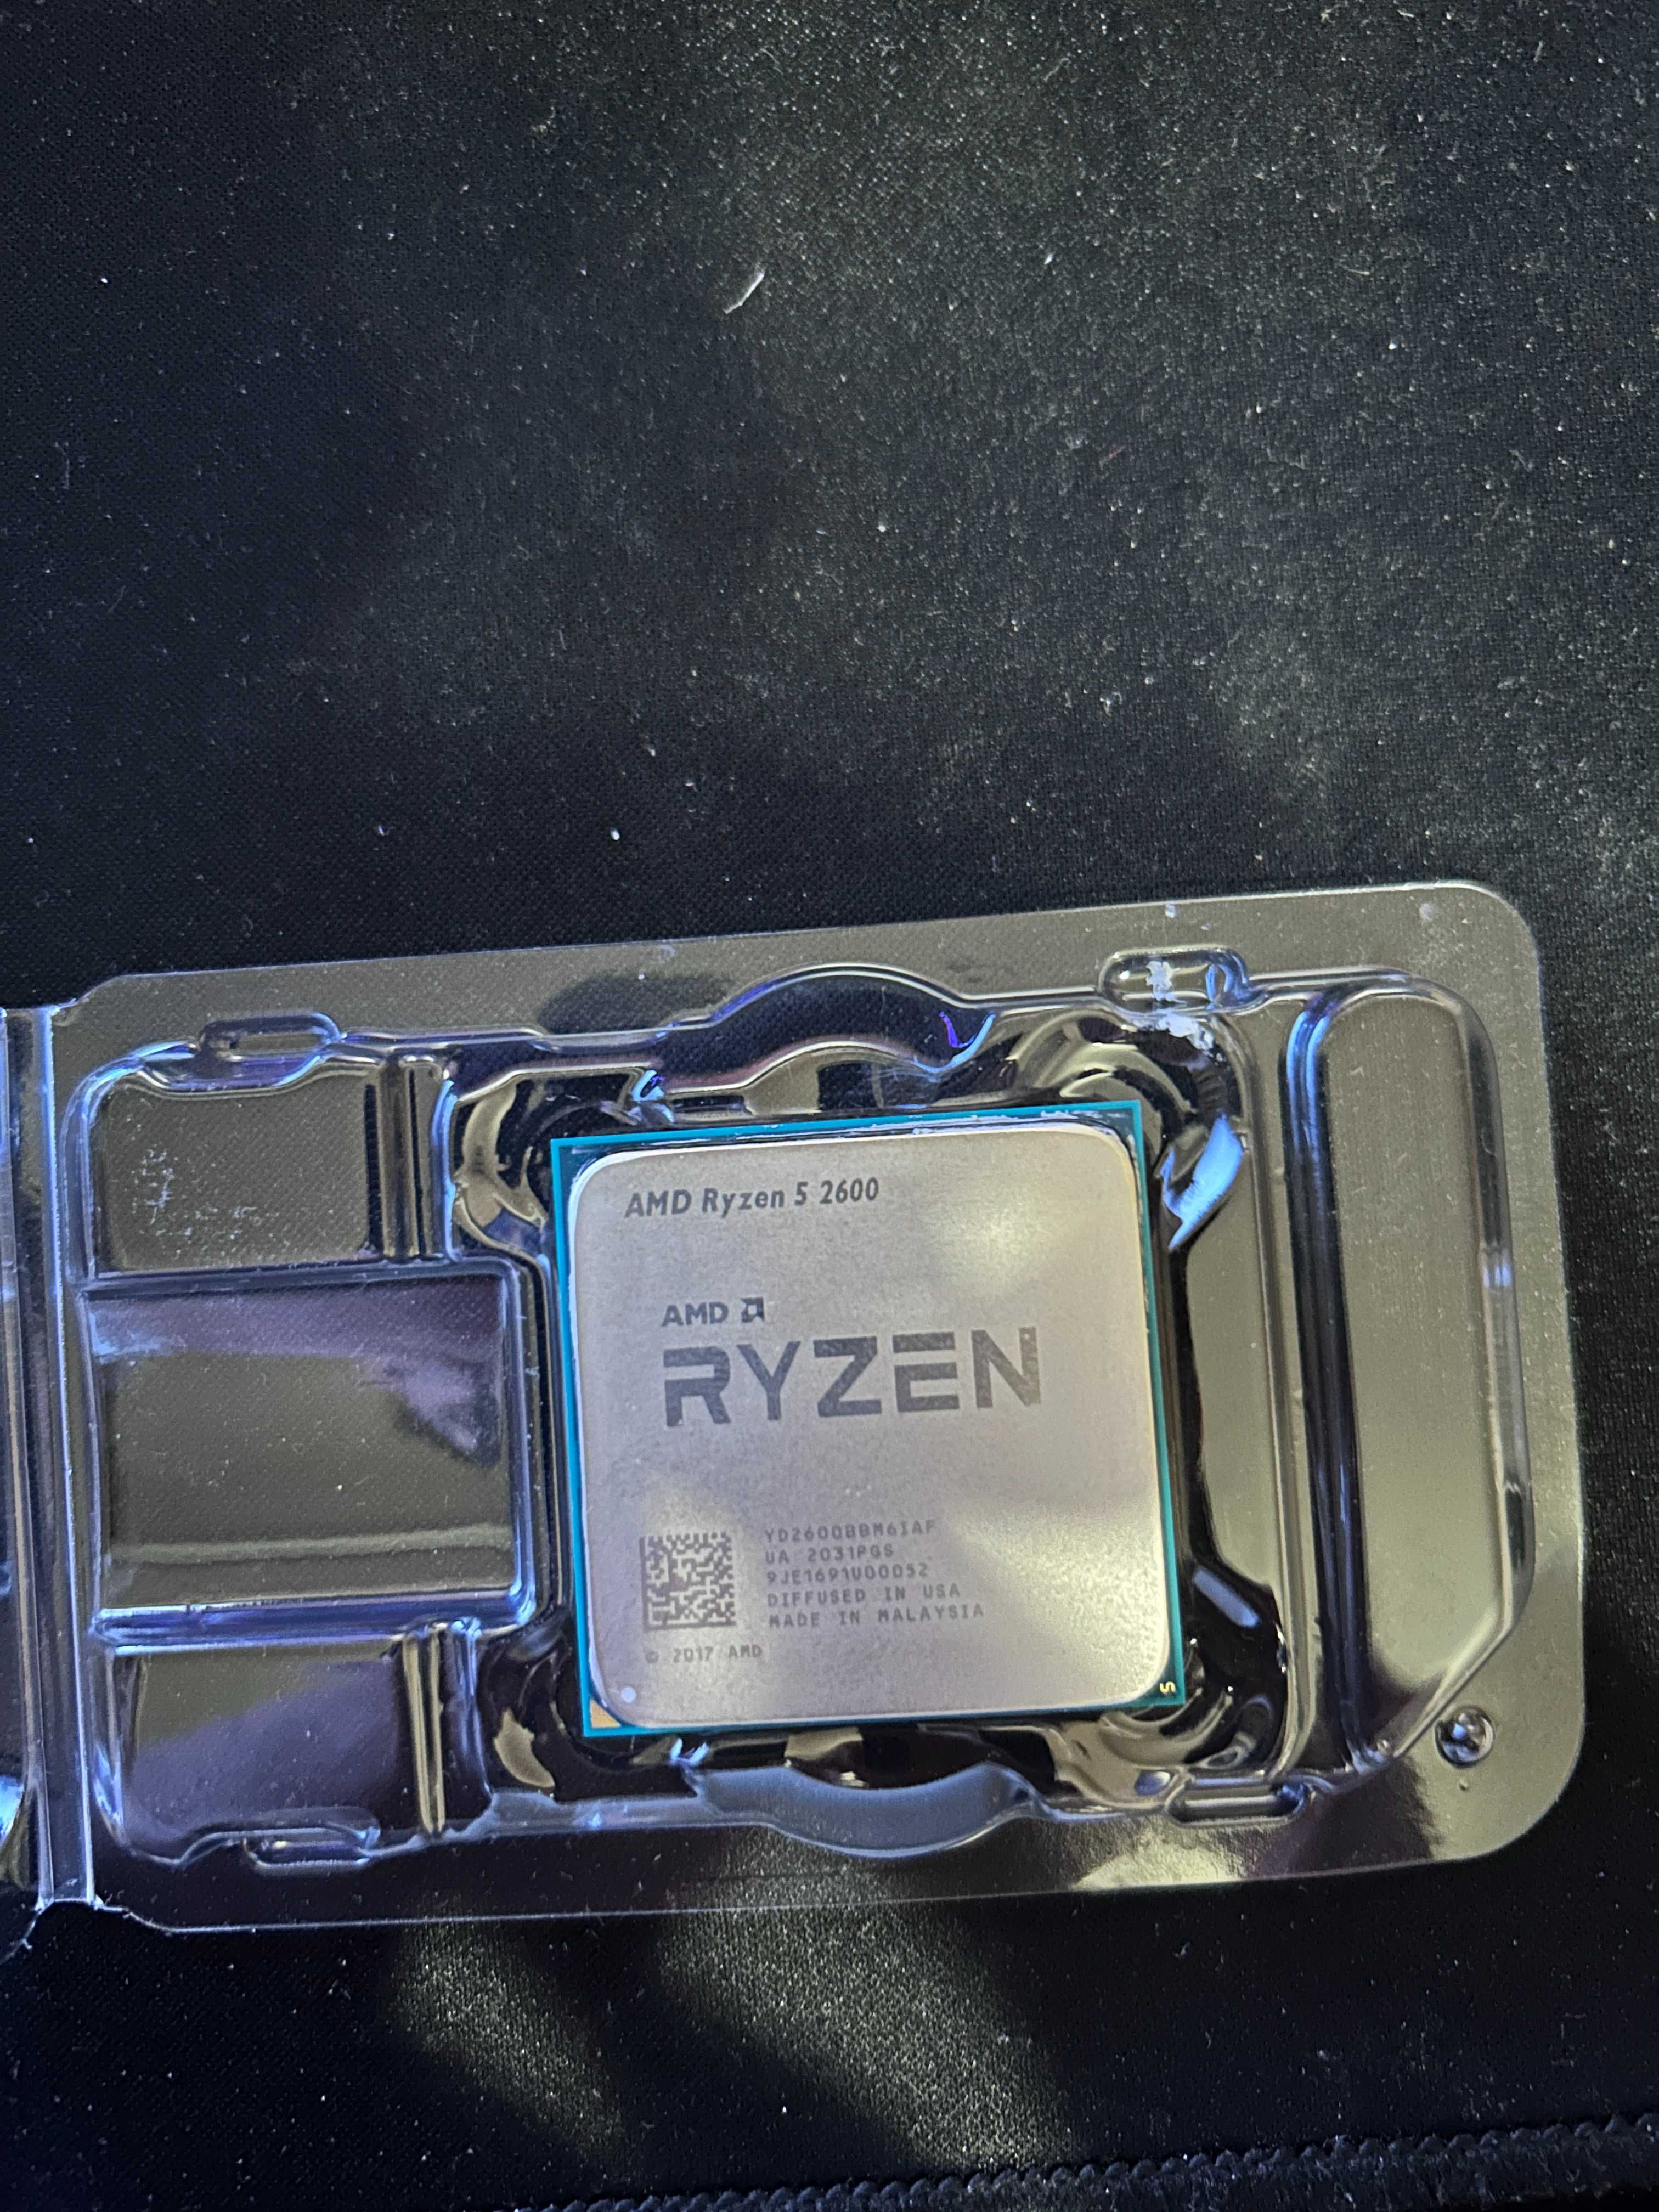 Ryzen 5 2600 + 16 GB DDR4 RAM 3000